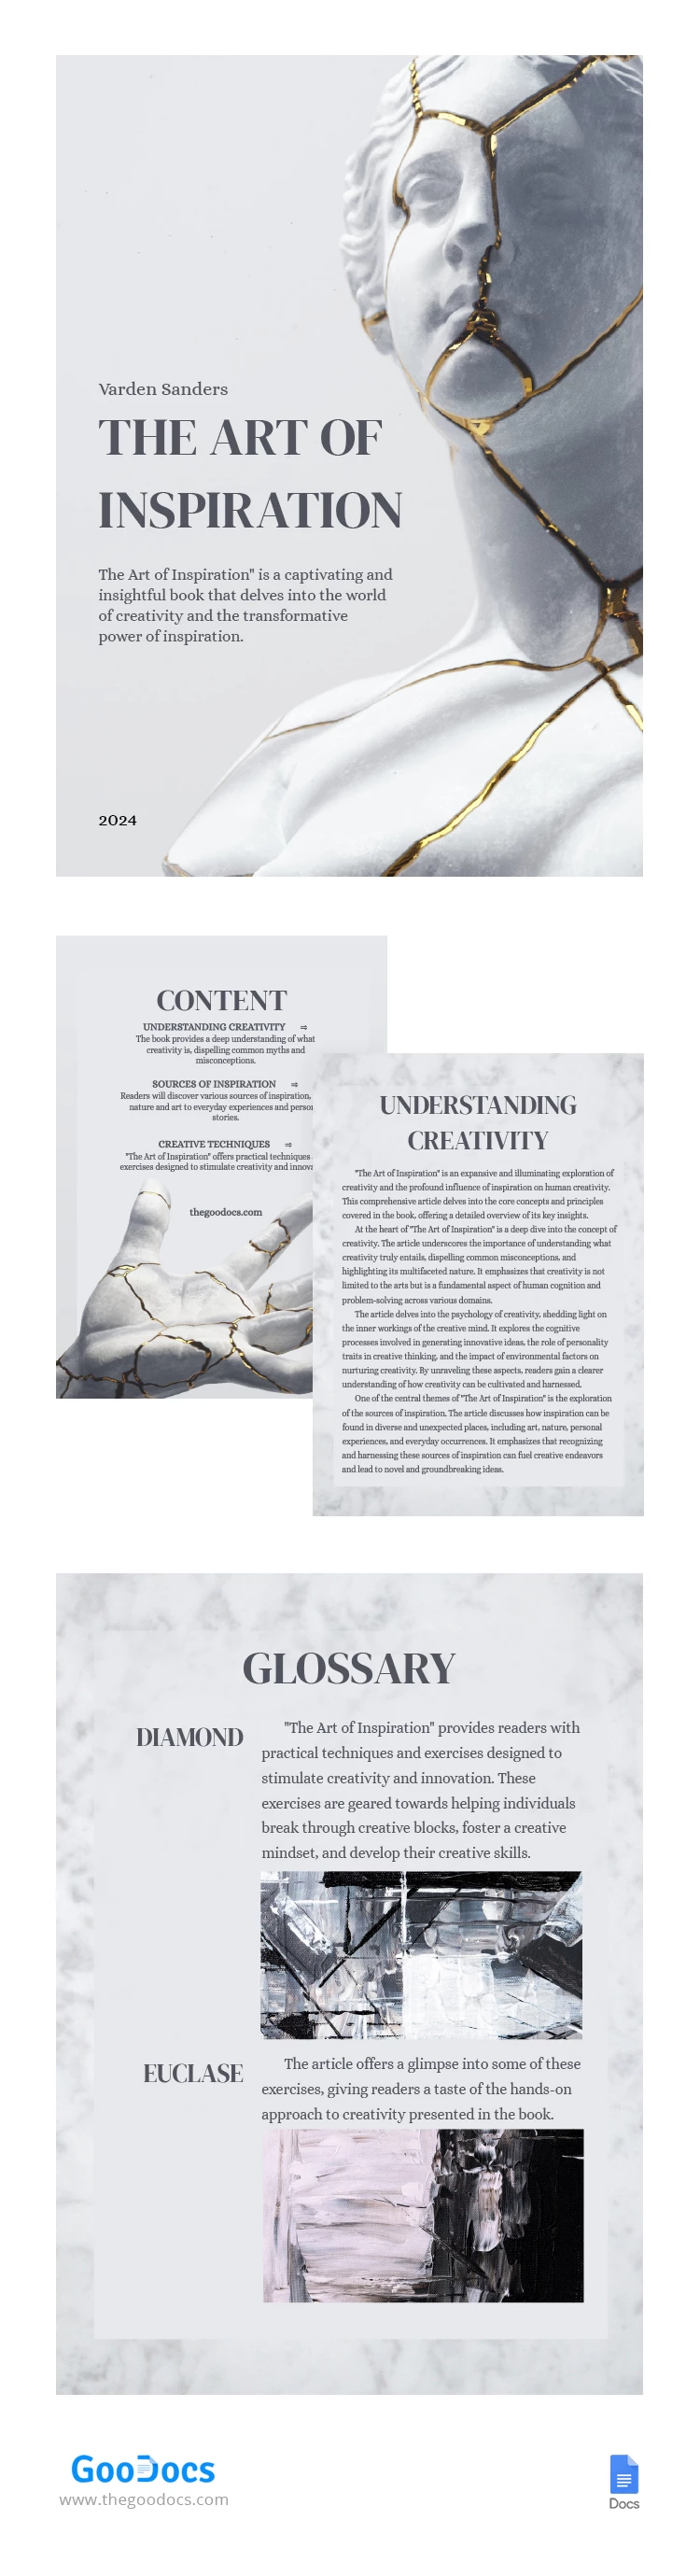 Livre électronique sur l'art du marbre - free Google Docs Template - 10066969